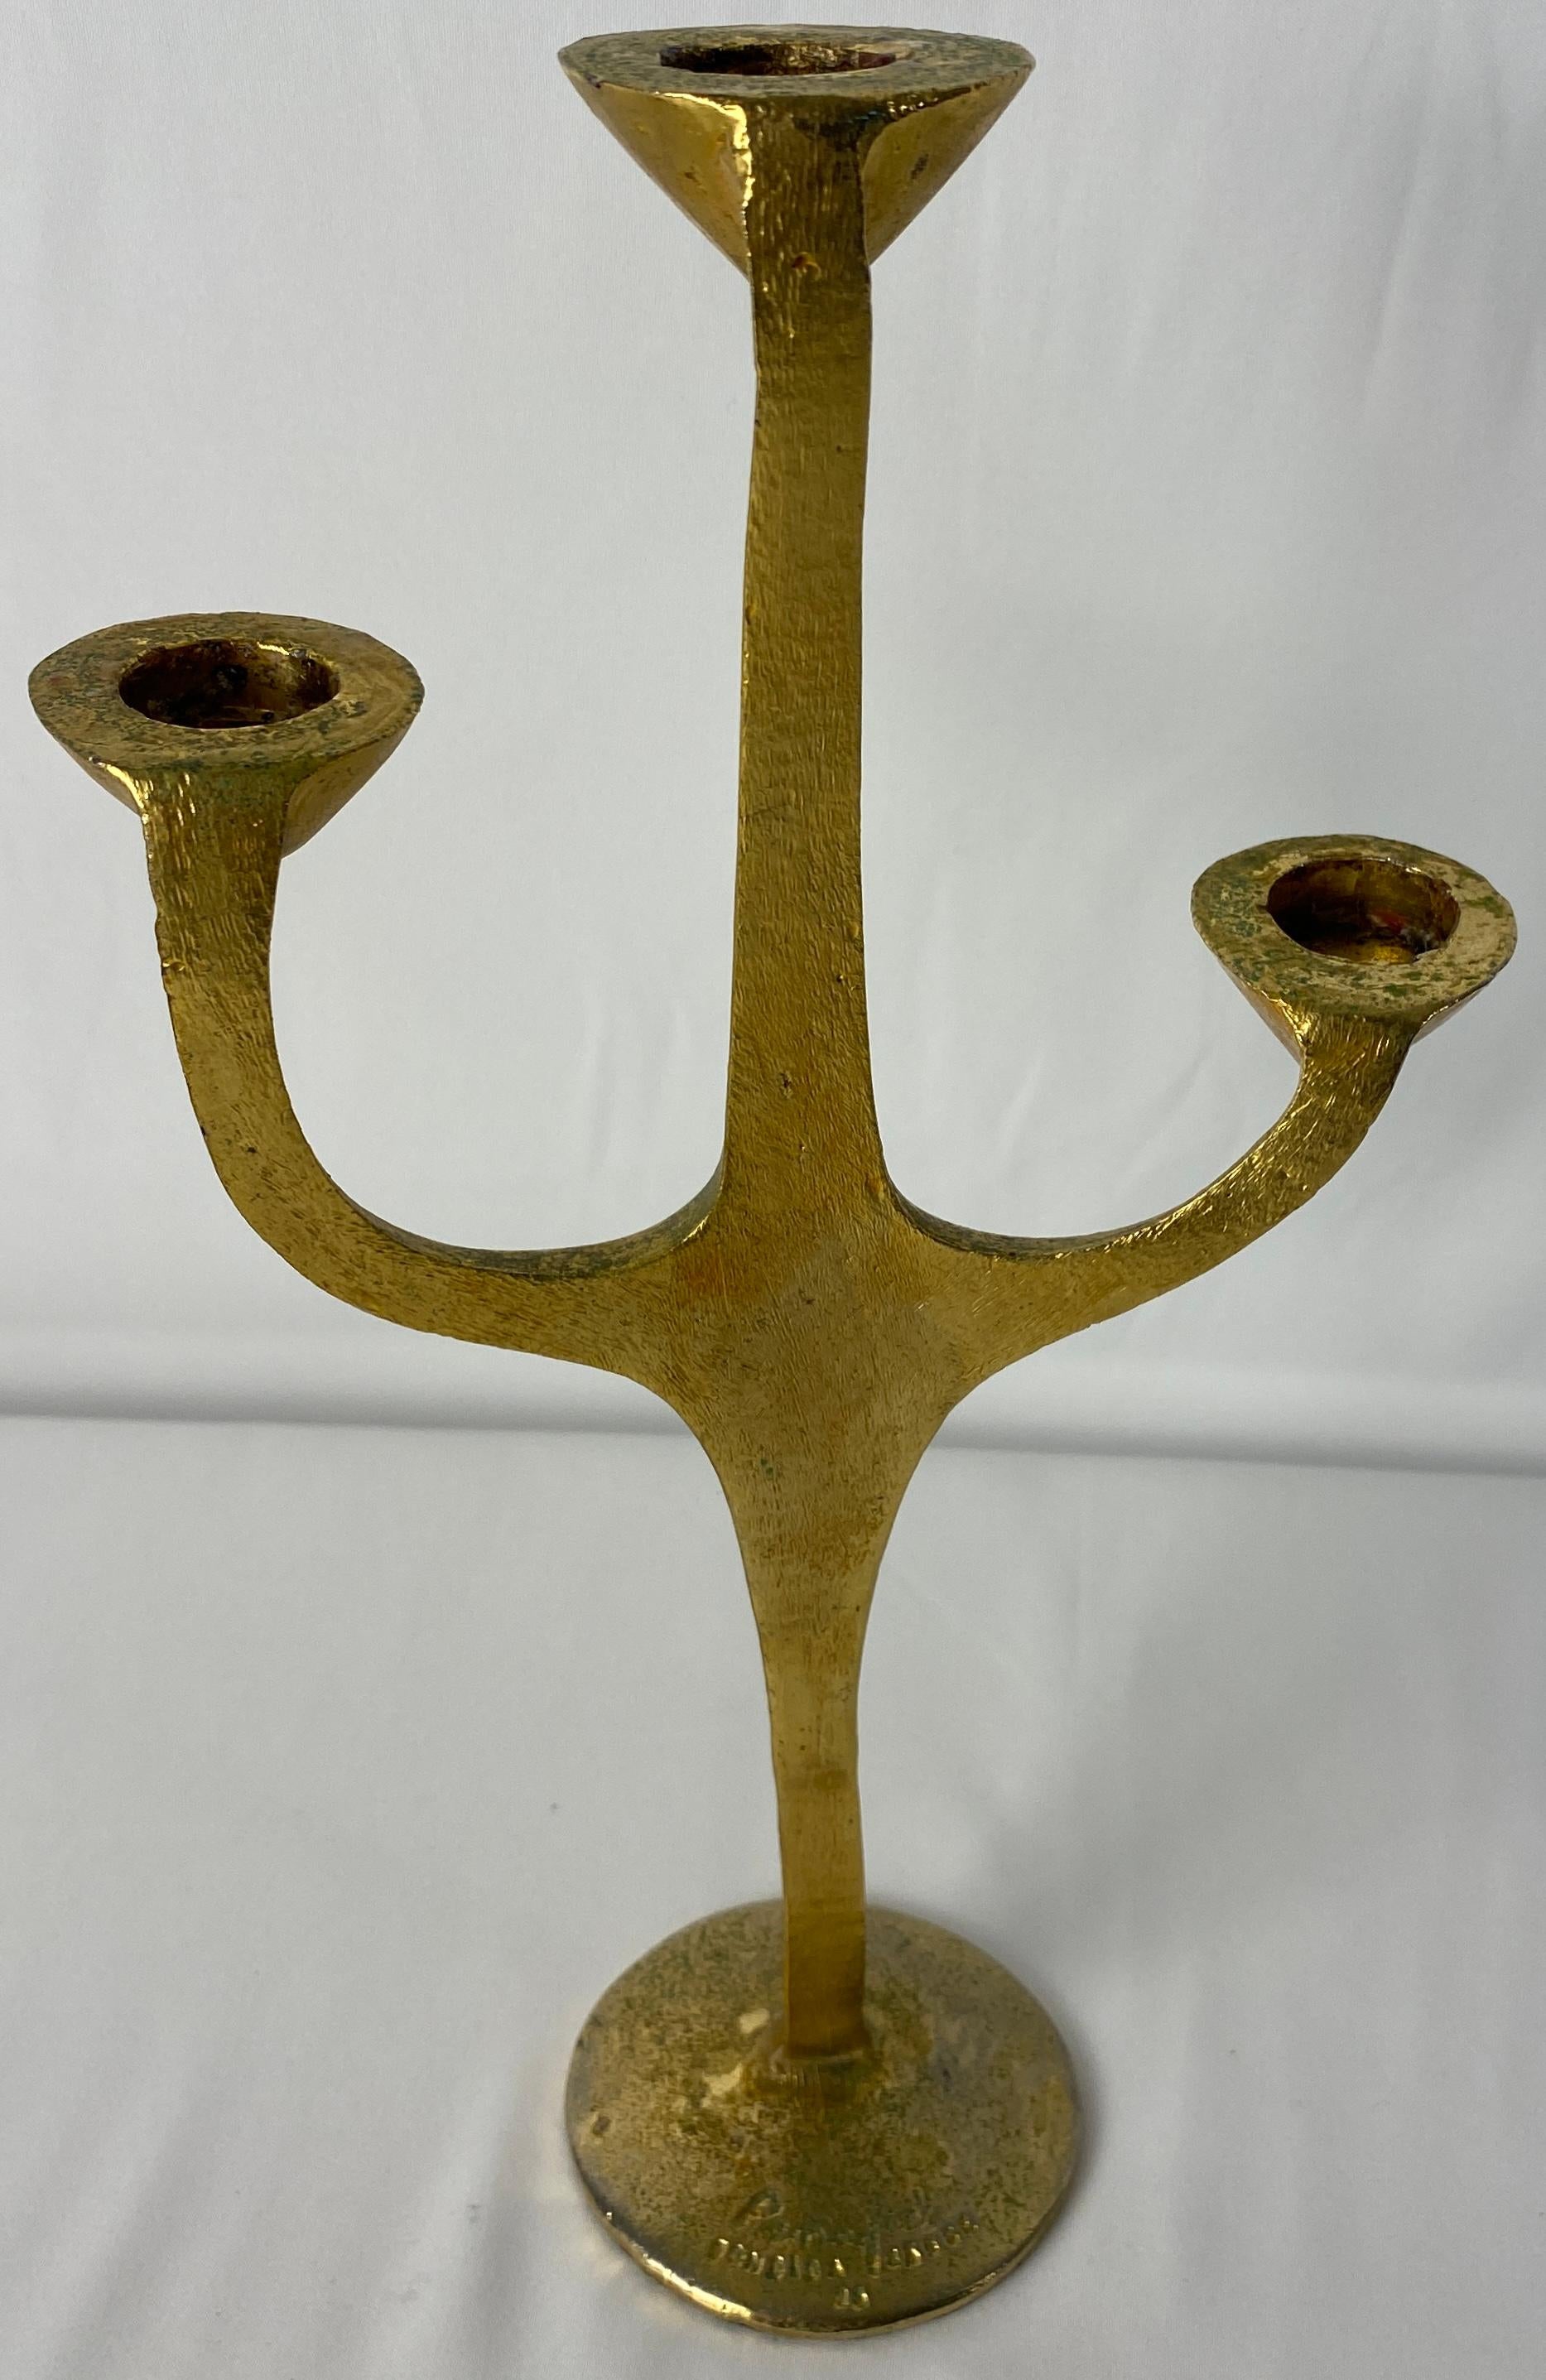 Ein feiner skulpturaler dreiarmiger Kerzenhalter aus Bronze von Carlos Penafiel. 
Unterschrieben.

Maße: 11 5/8